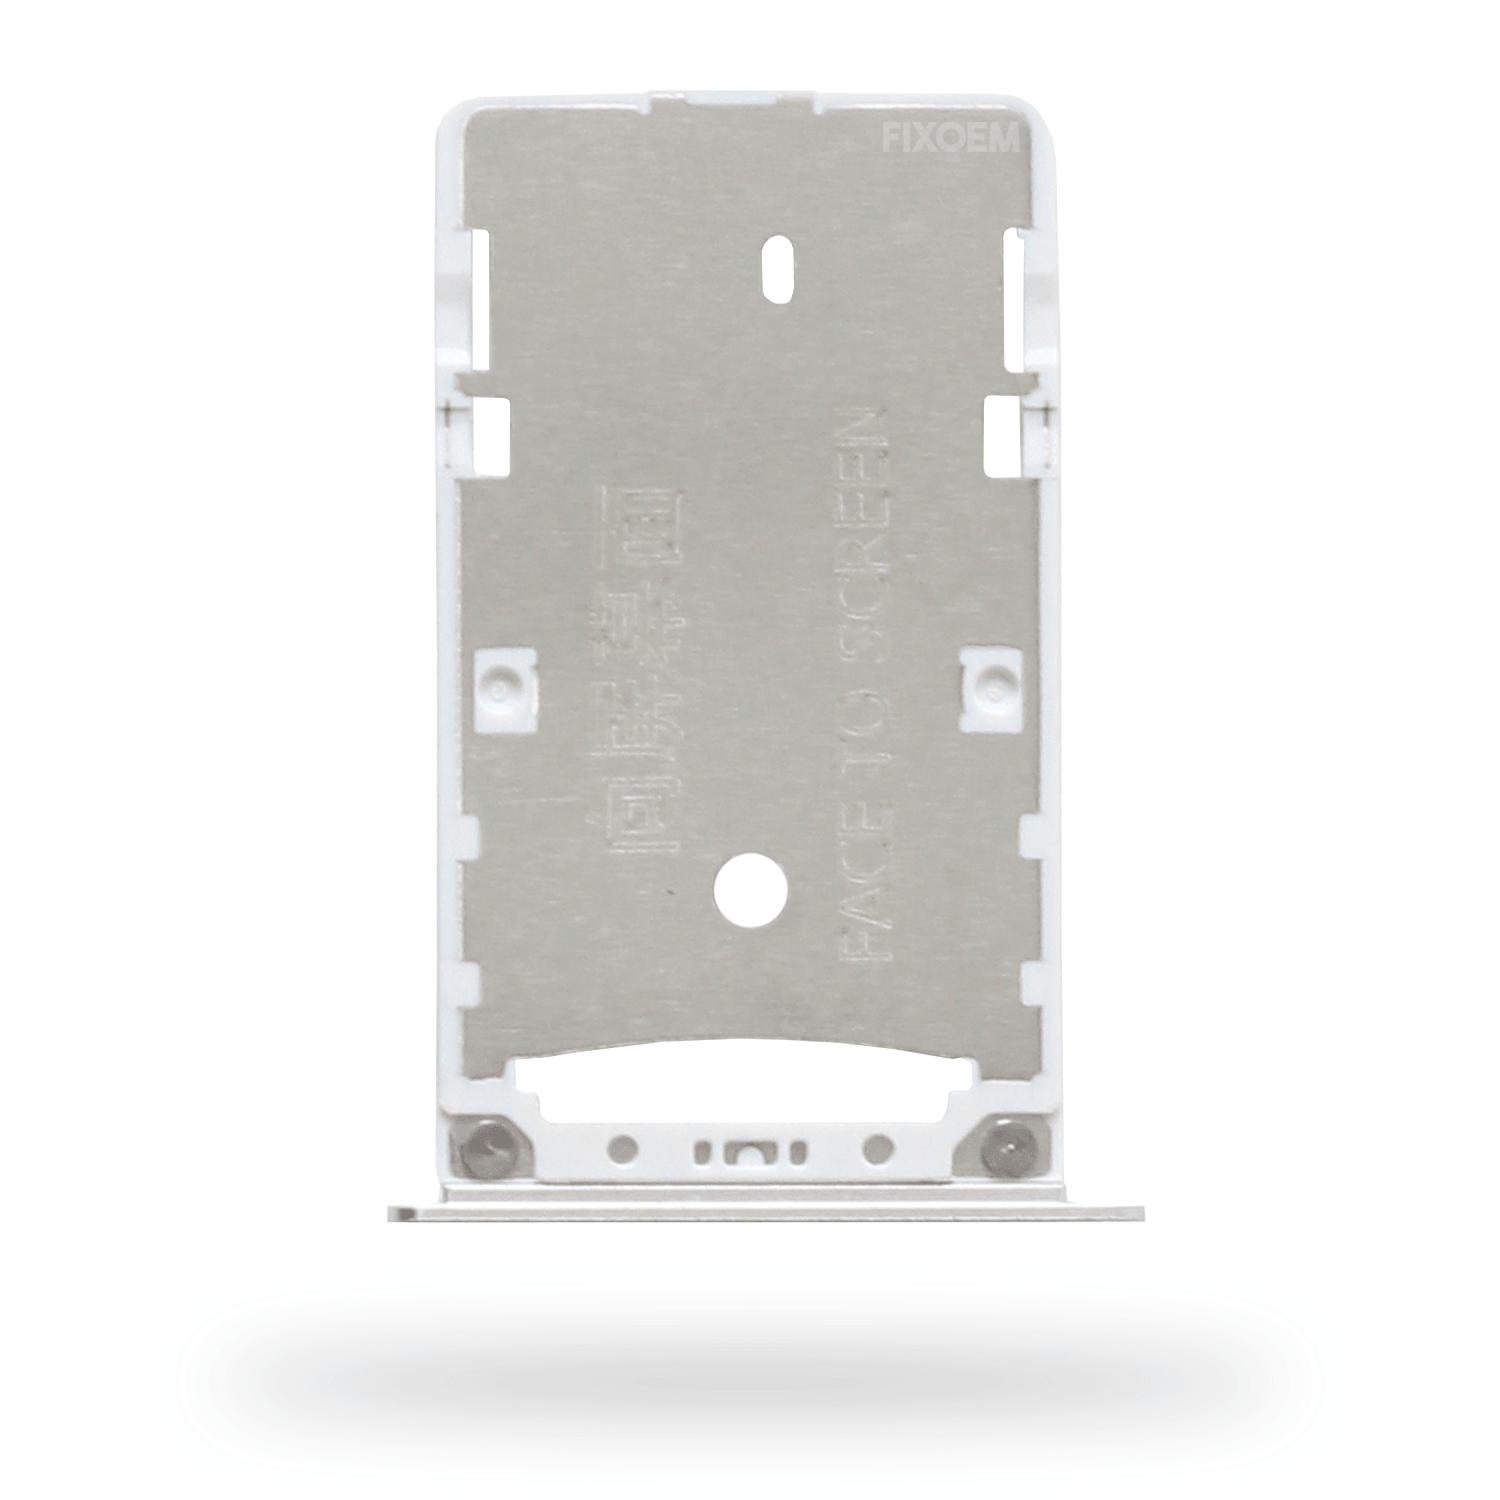 Charola Sim Xiaomi Redmi 4X a solo $ 50.00 Refaccion y puestos celulares, refurbish y microelectronica.- FixOEM